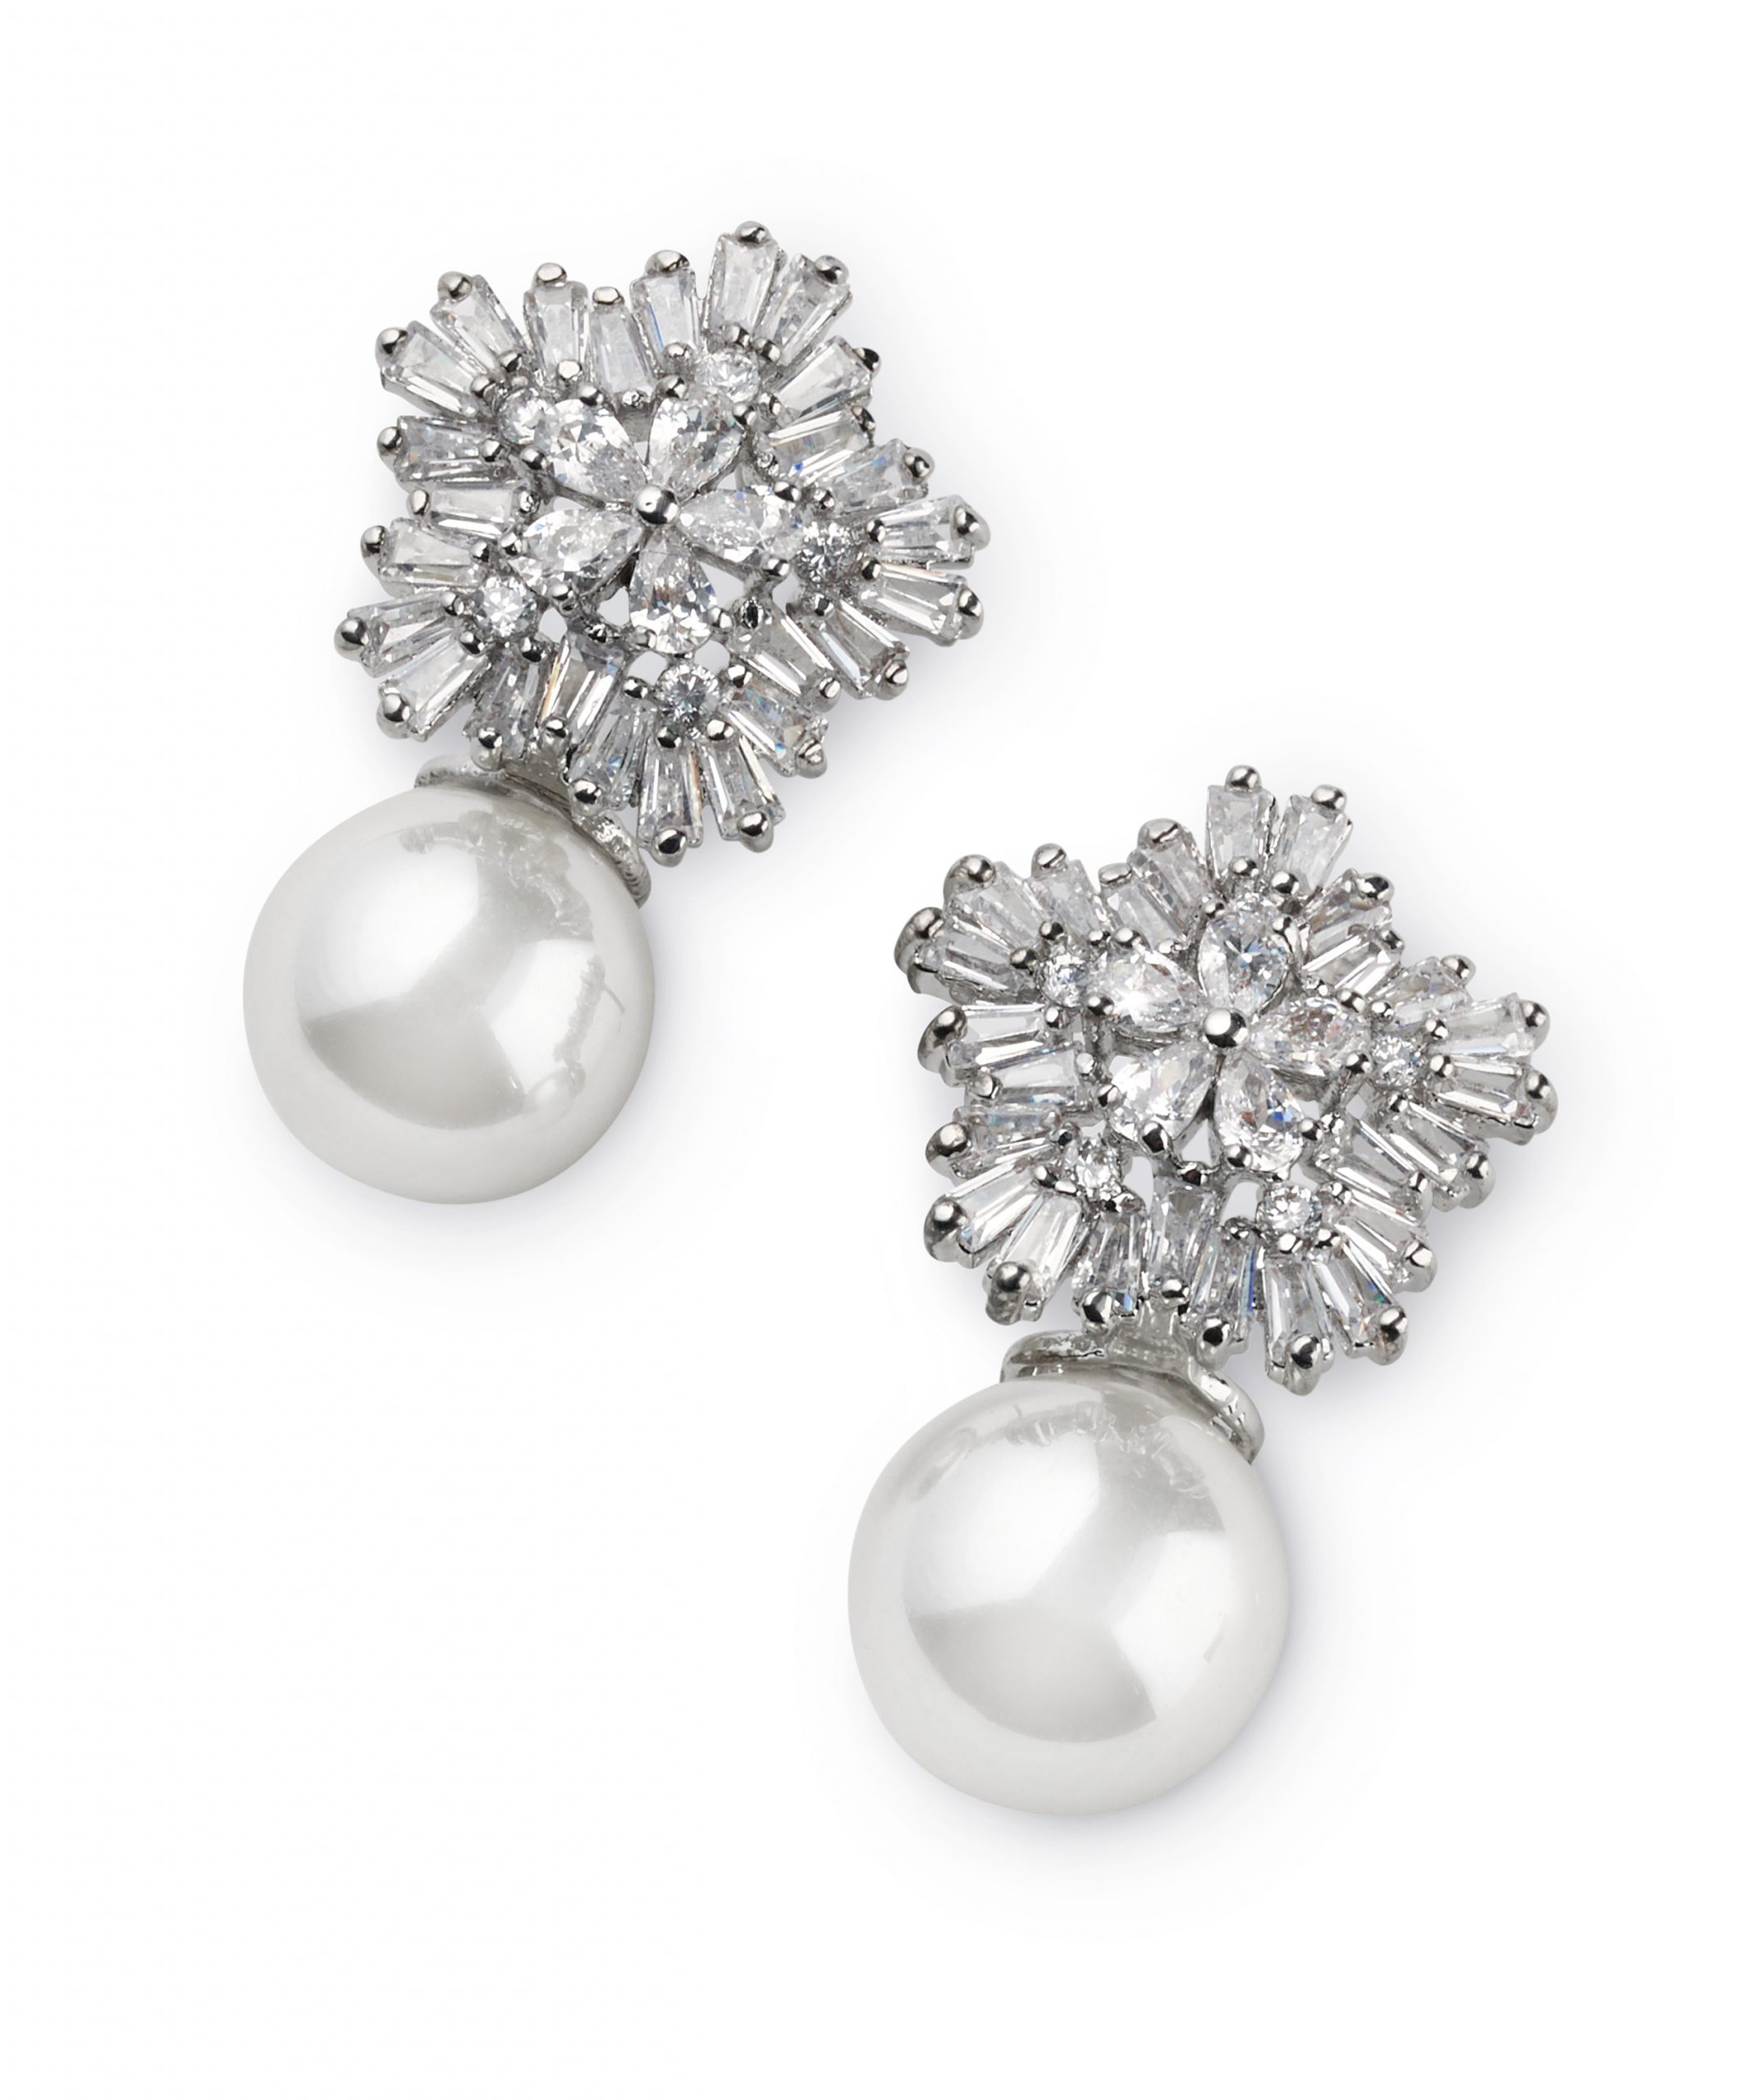 Ohrschmuck mit grosser Perle und facettierten weissen Steinen für die Braut, in hell rhodinierter Fassung, von CELEBRIDE Trisa Accessoires, auf weissem Hintergrund